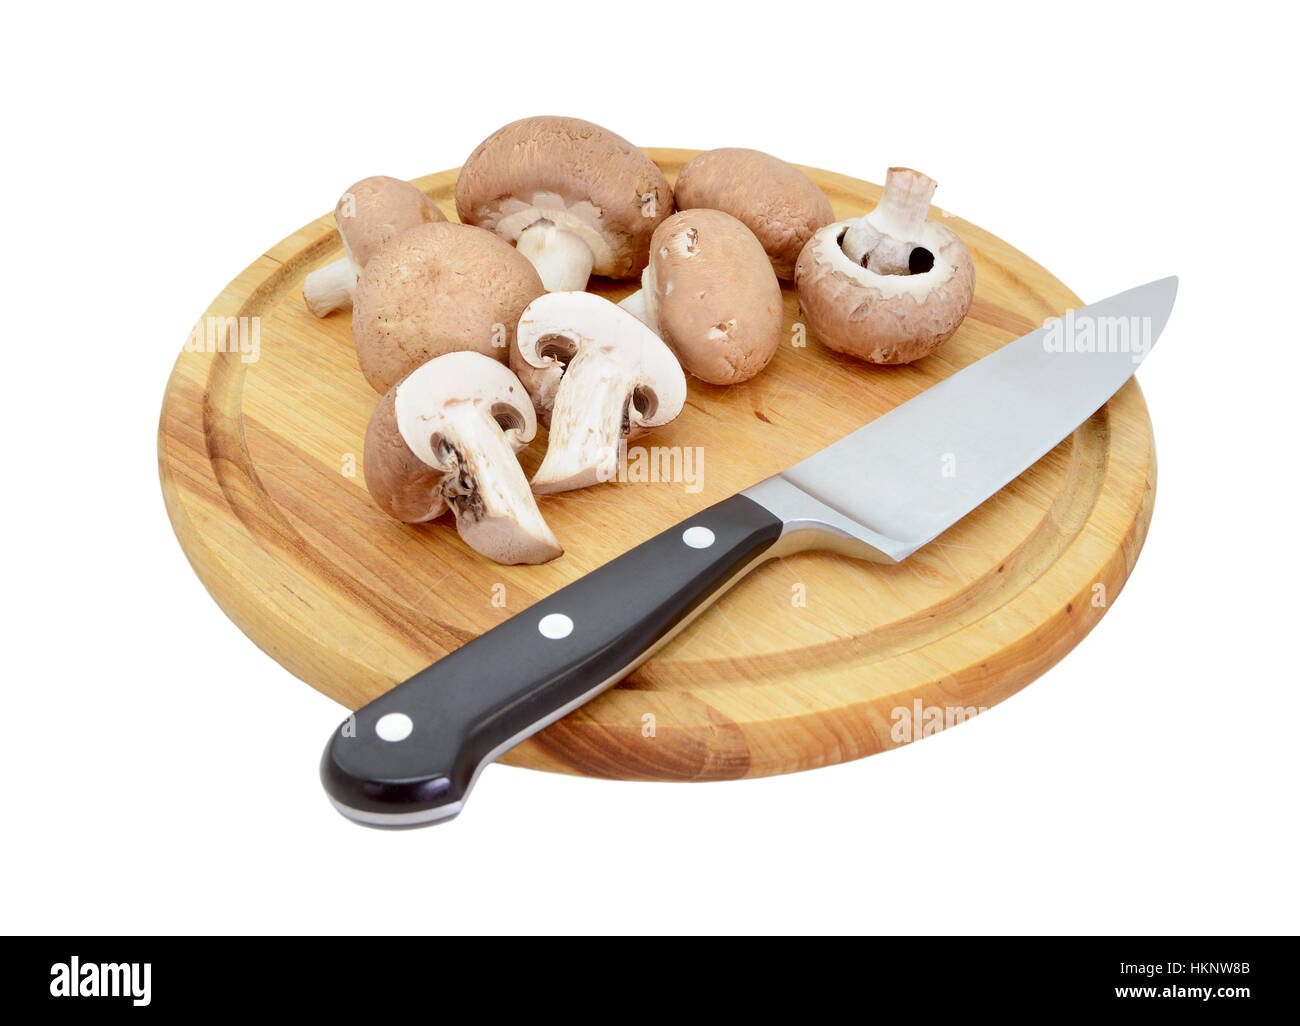 Intero e dimezzato i funghi castagne su un tagliere di legno con la lama di un coltello, isolato su sfondo bianco Foto Stock